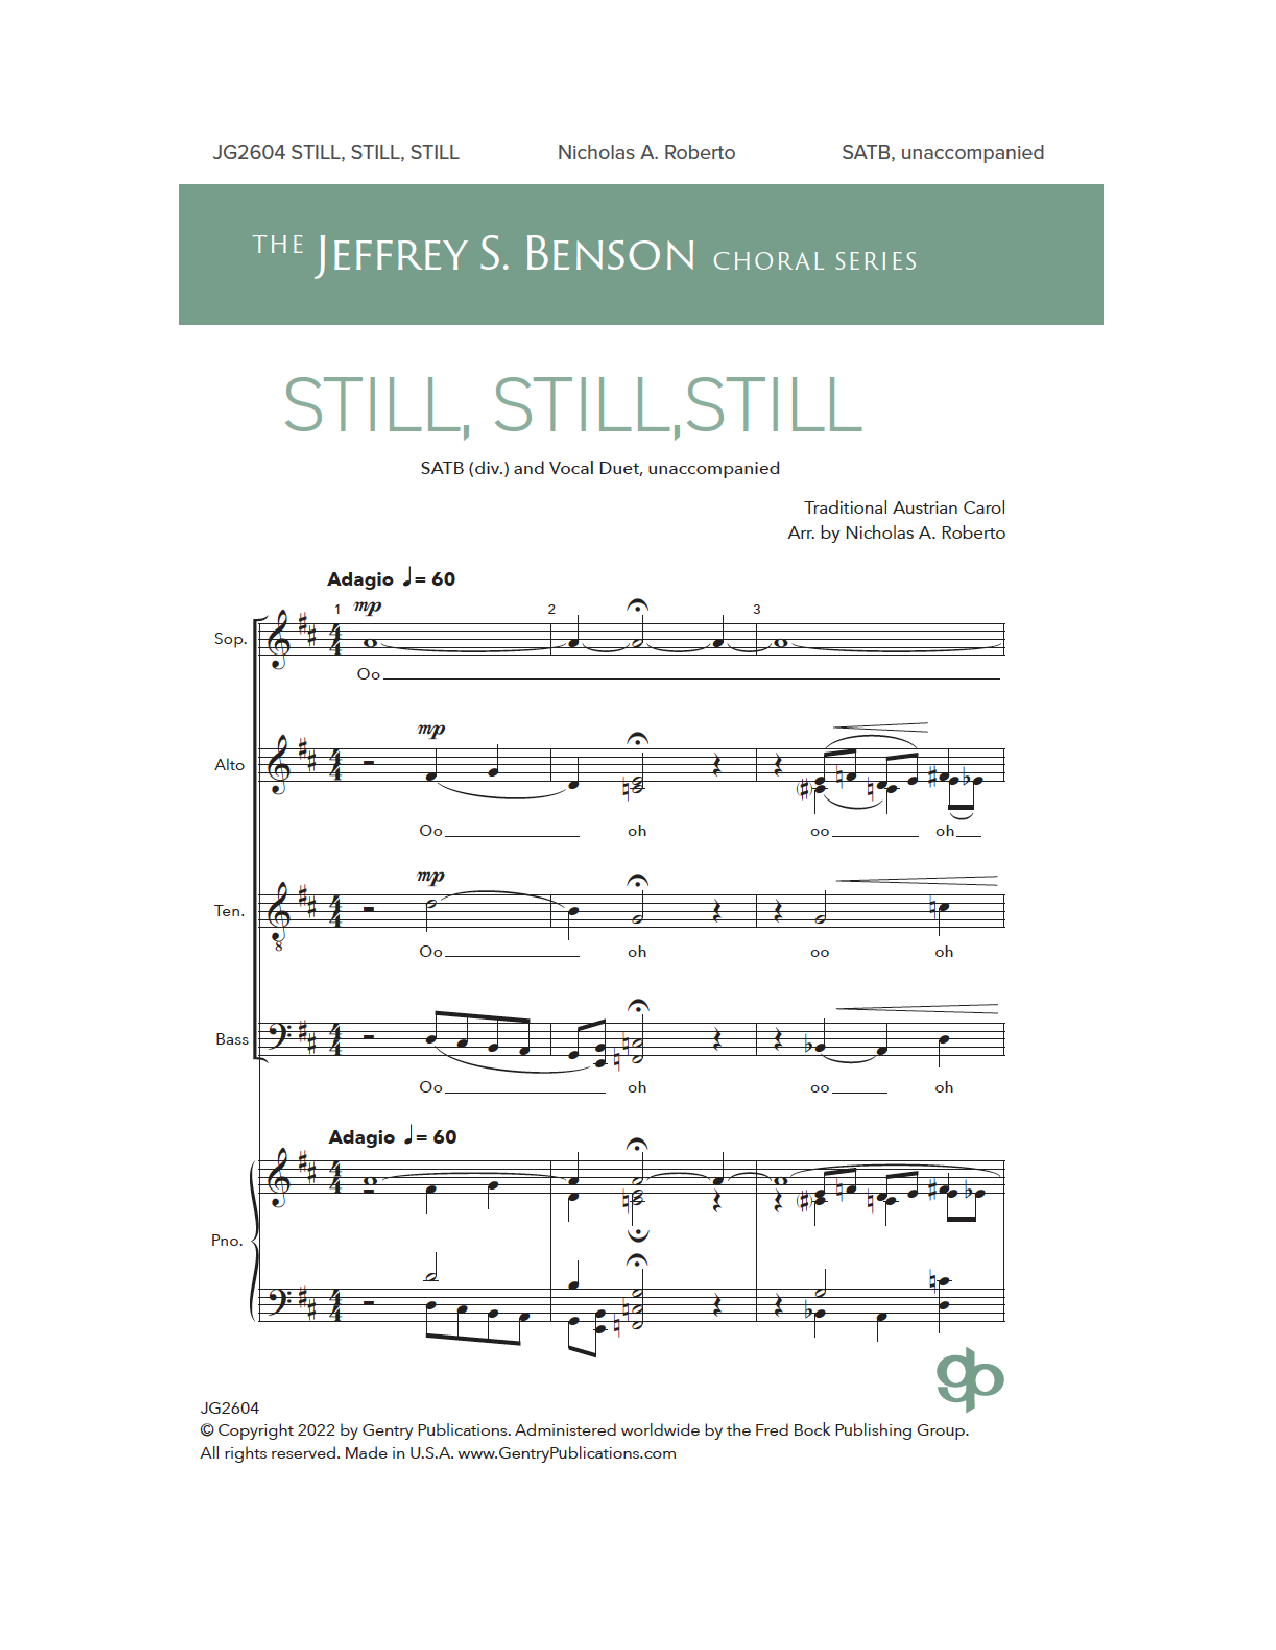 Still, Still, Still (SATB Choir) von Nicholas A. Roberto